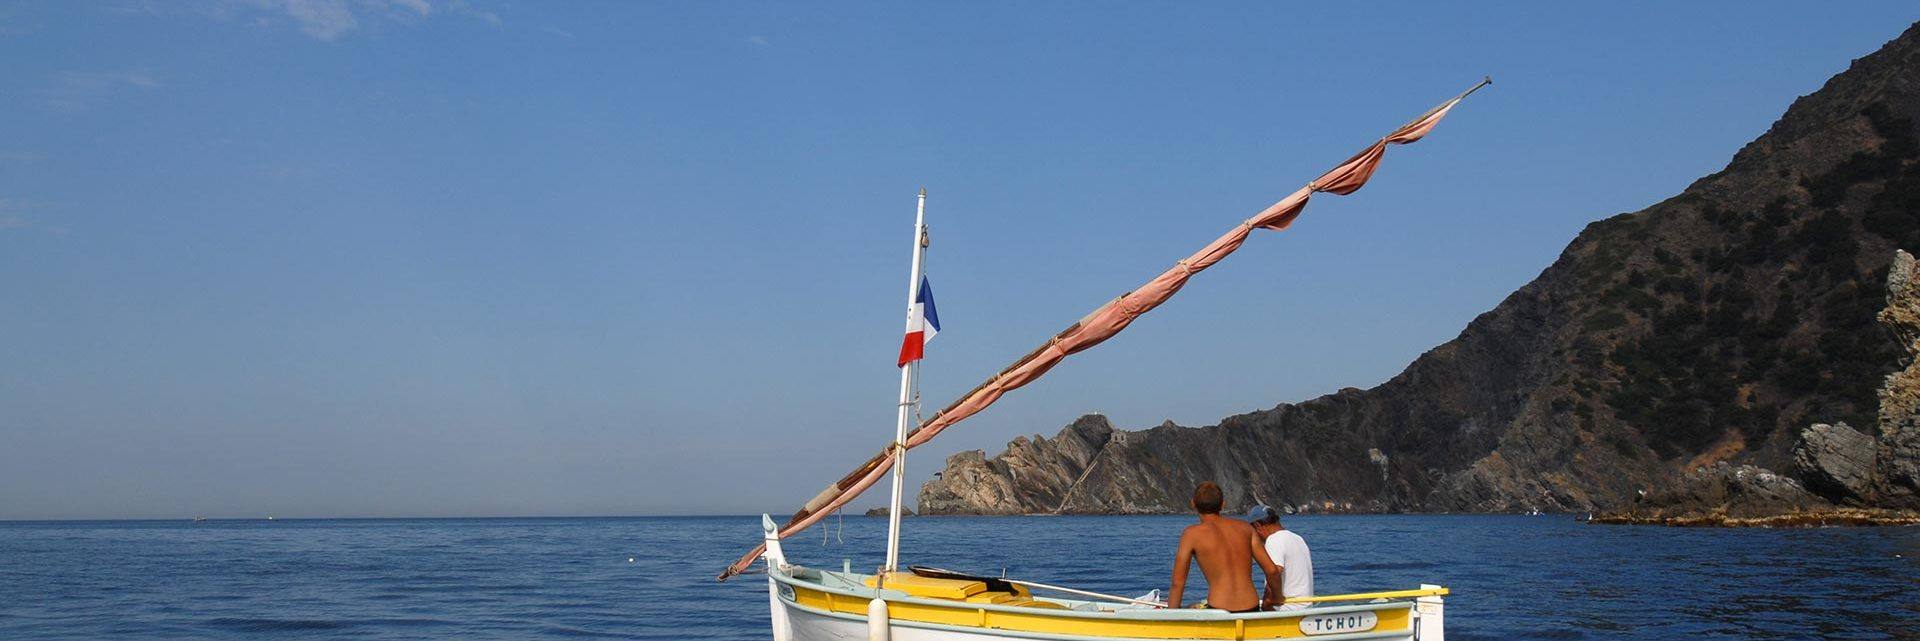 On board a 'pointu' fishing boat